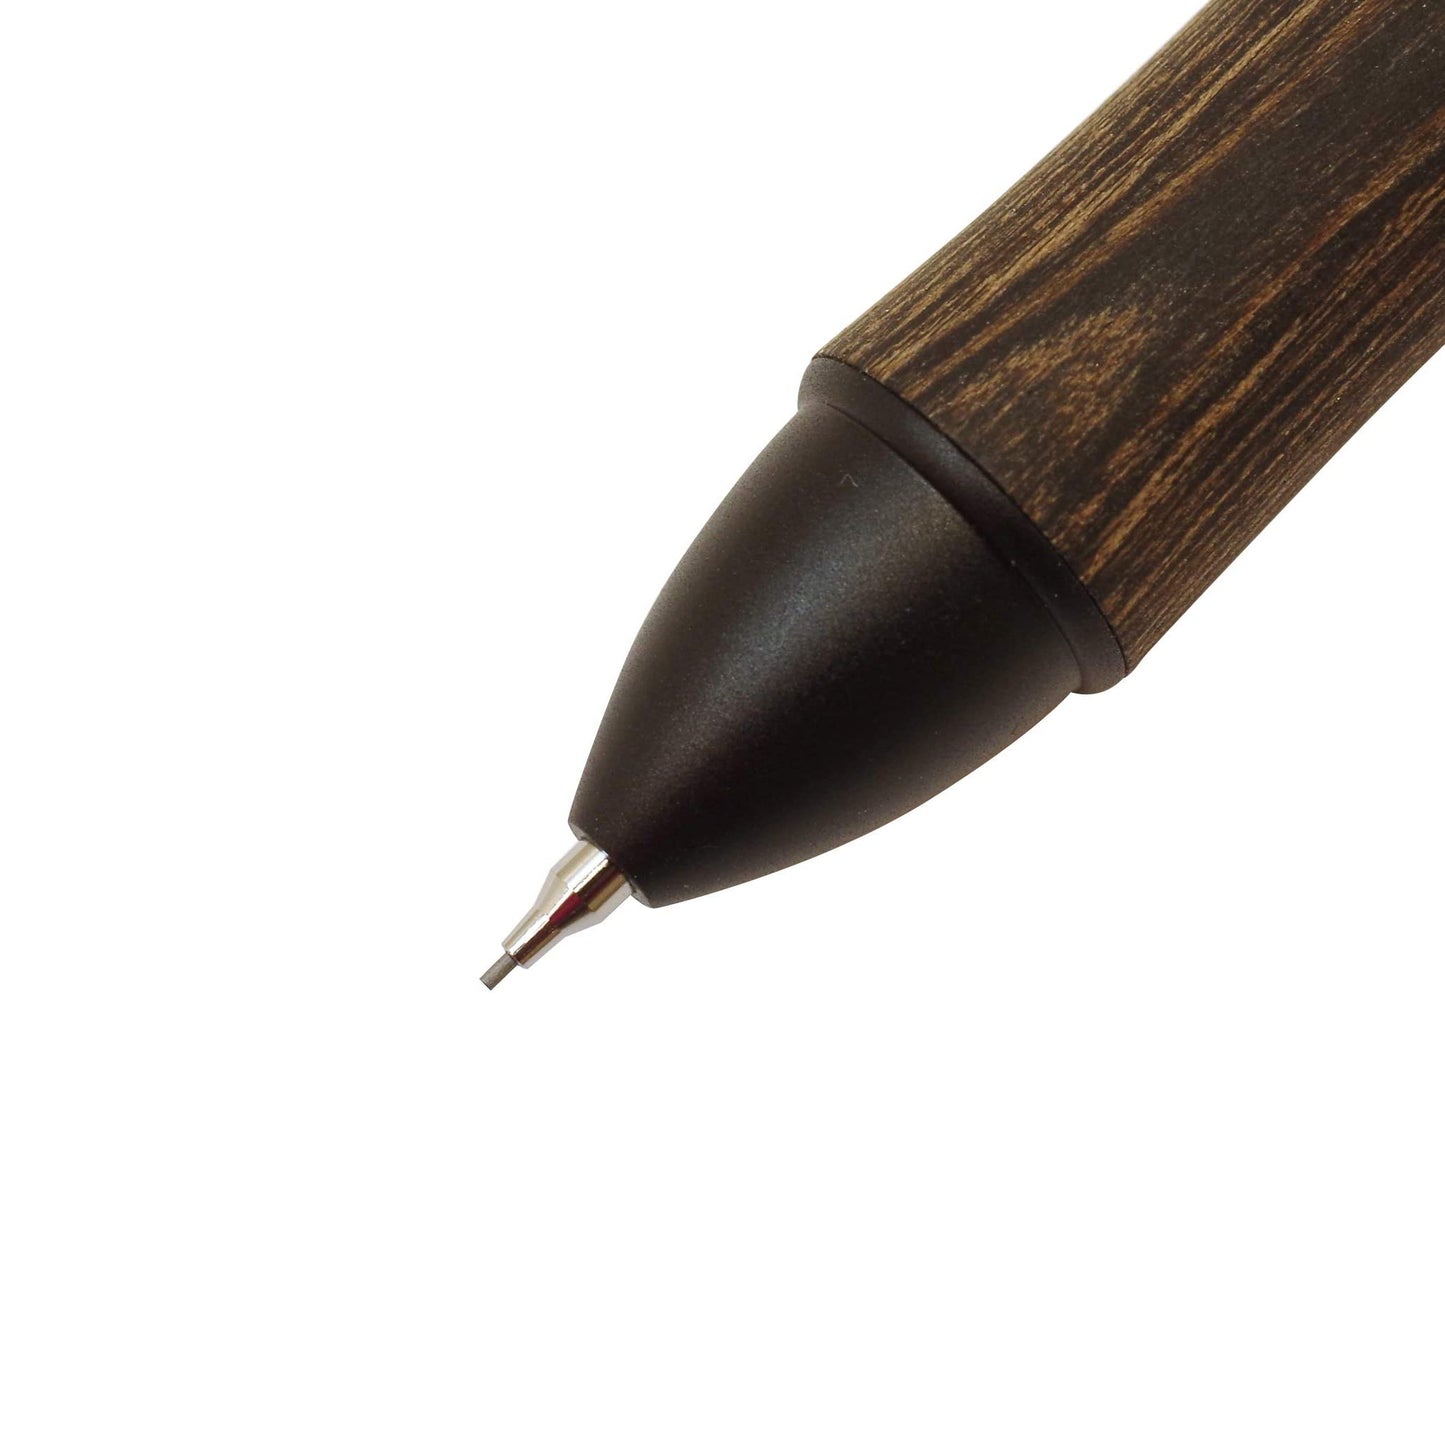 4+1 Wood Ballpoint Pen & Mechanical Pencil / Pilot